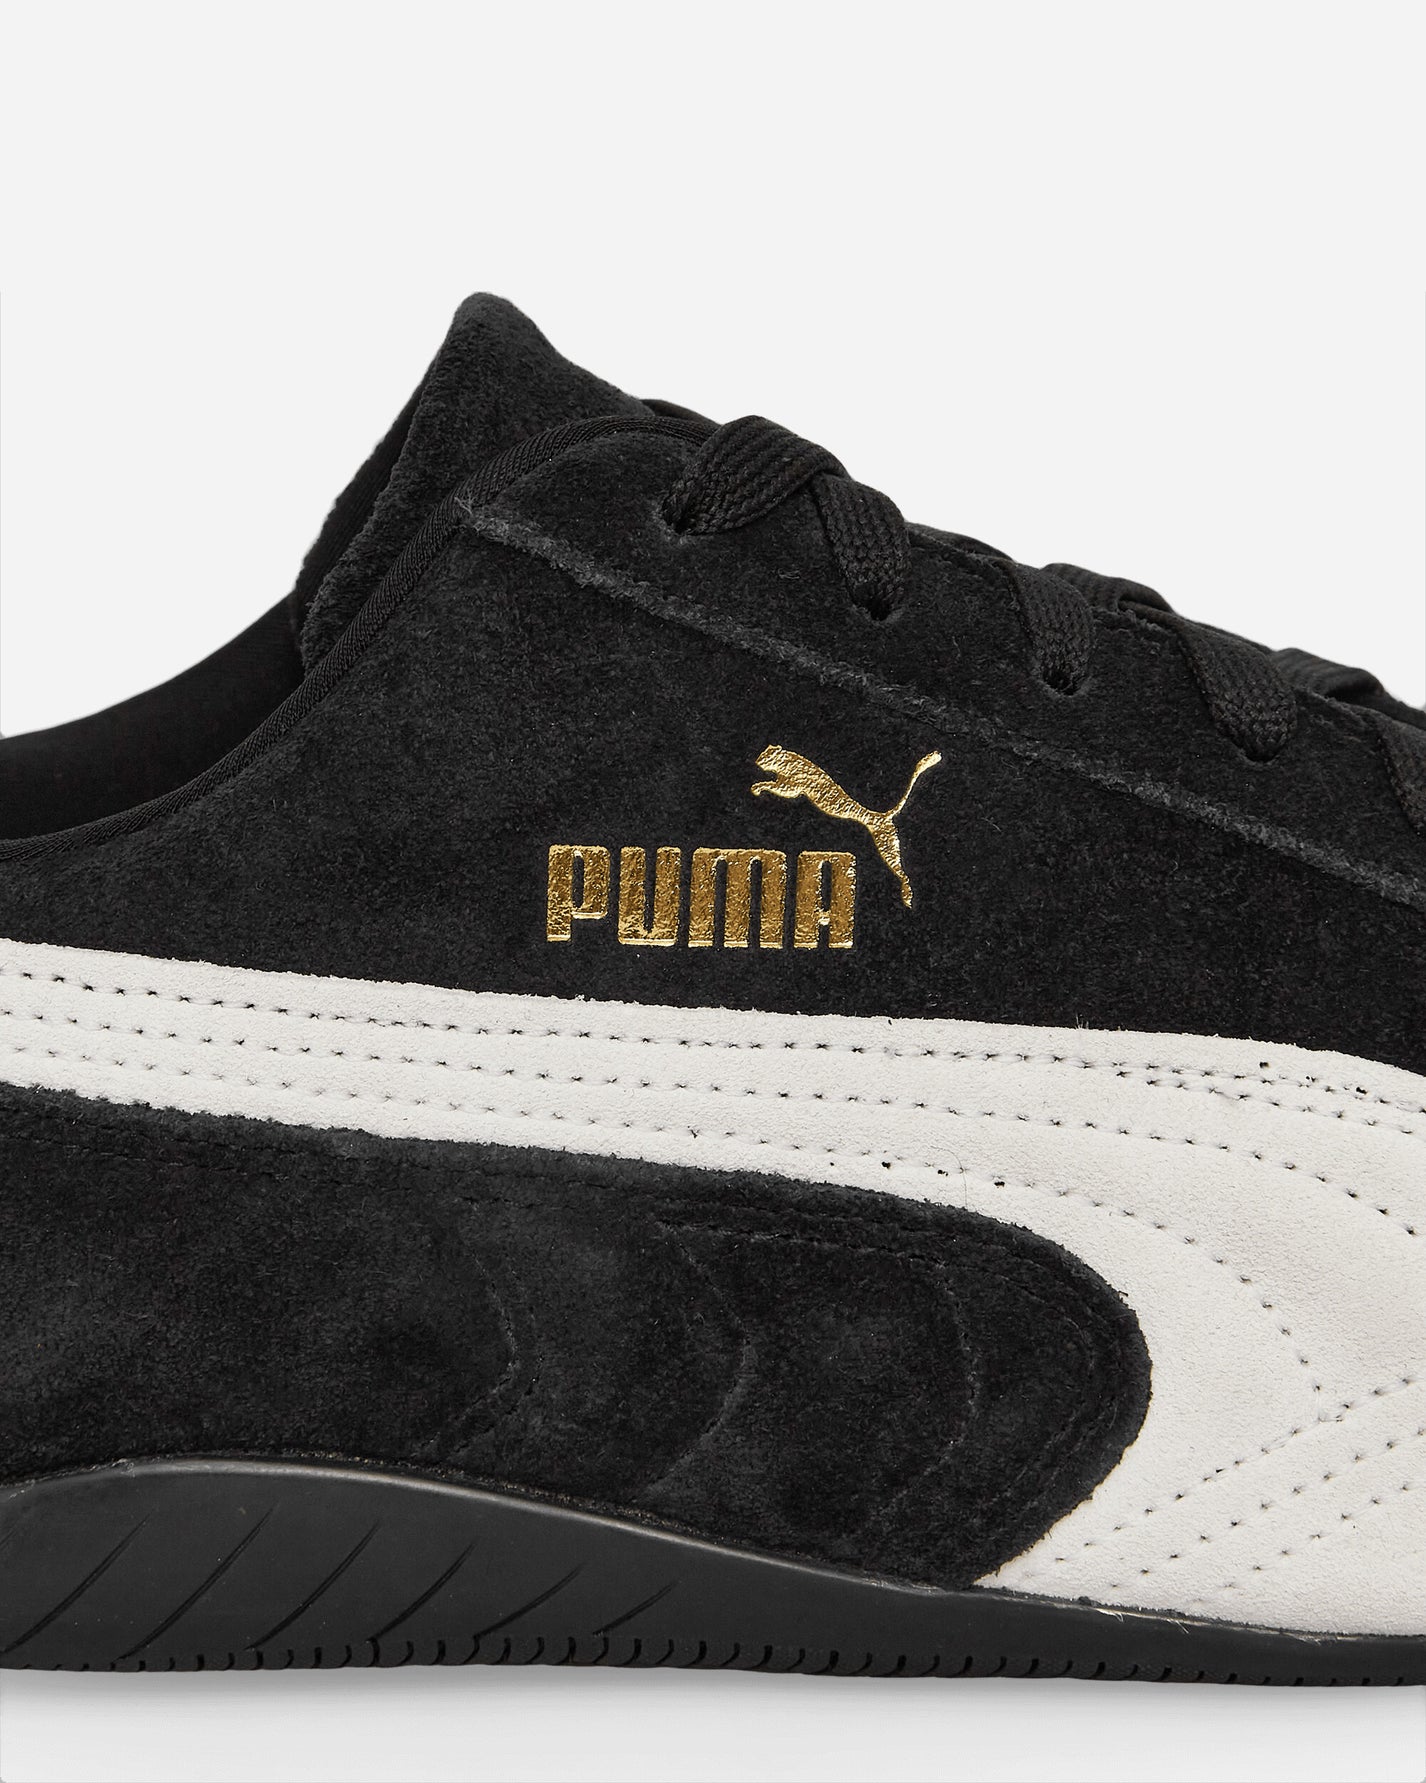 Puma Speedcat Og Puma Black/Puma White Sneakers Low 398846-01